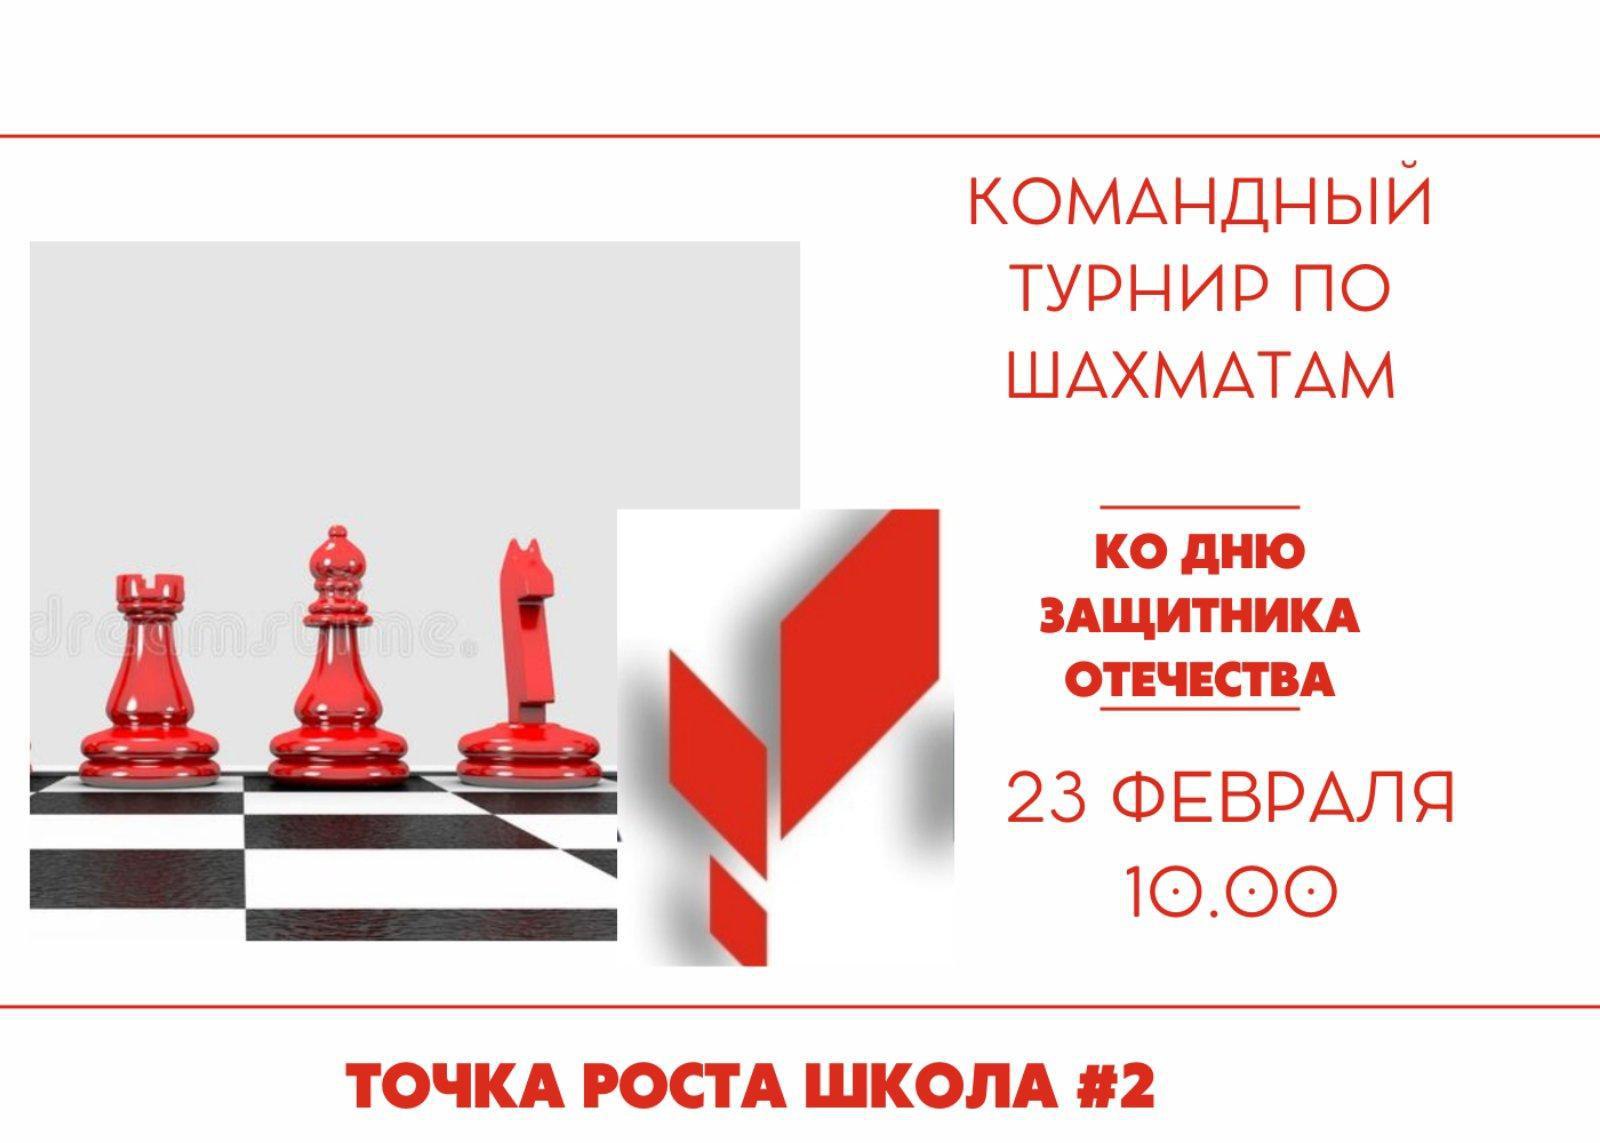 Ура! Мы объявляем регистрацию на семейный командный турнир по шахматам, посвящённый Дню защитника Отечества!.